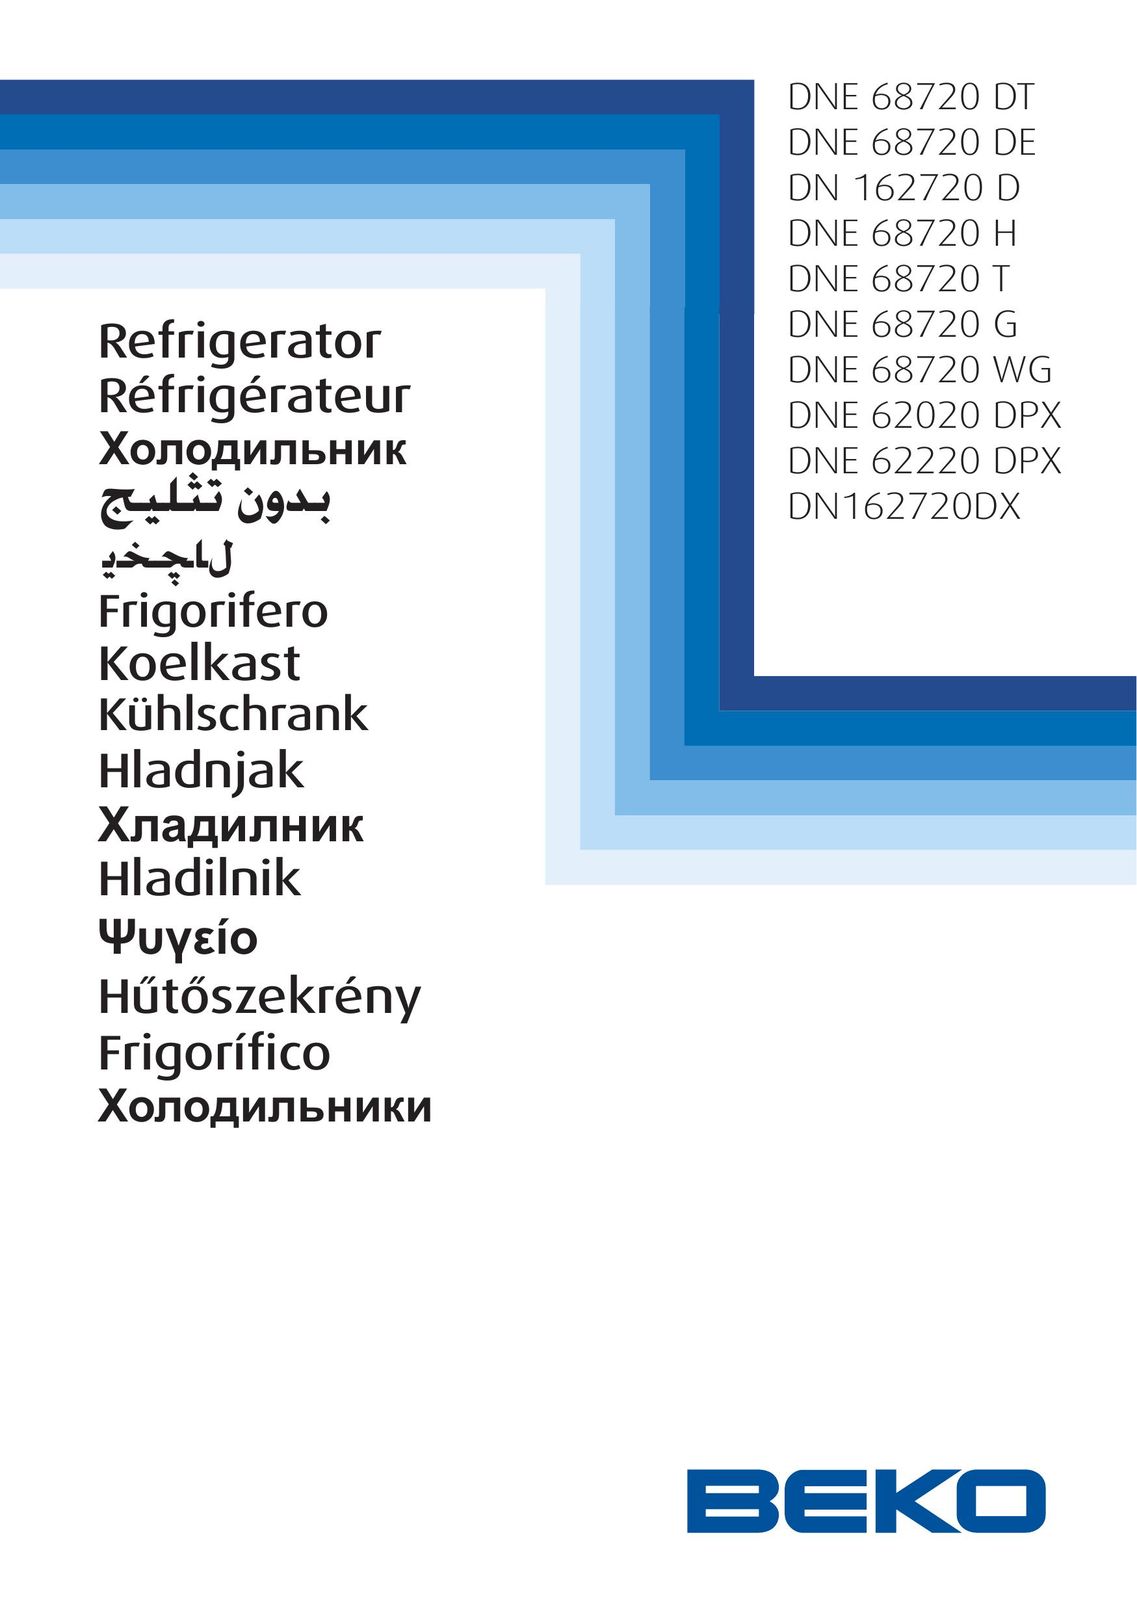 Beko DNE68720G Freezer User Manual